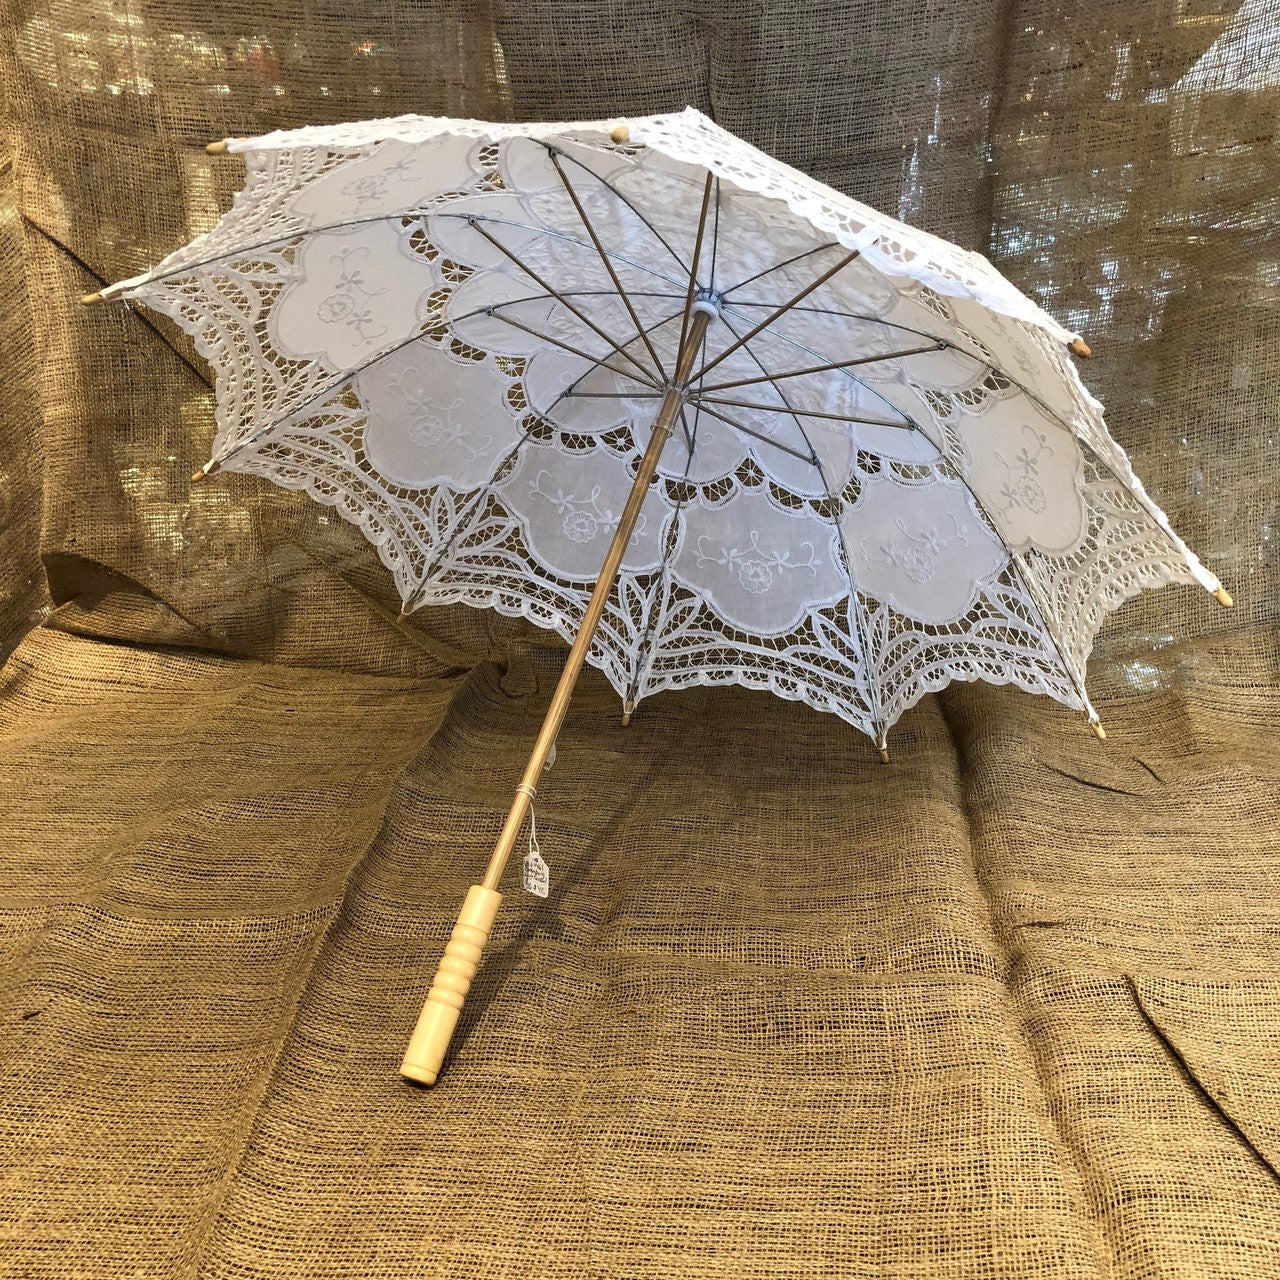 Old-Fashioned, White, Parasol, Umbrella, Batternburg , Lace, large.